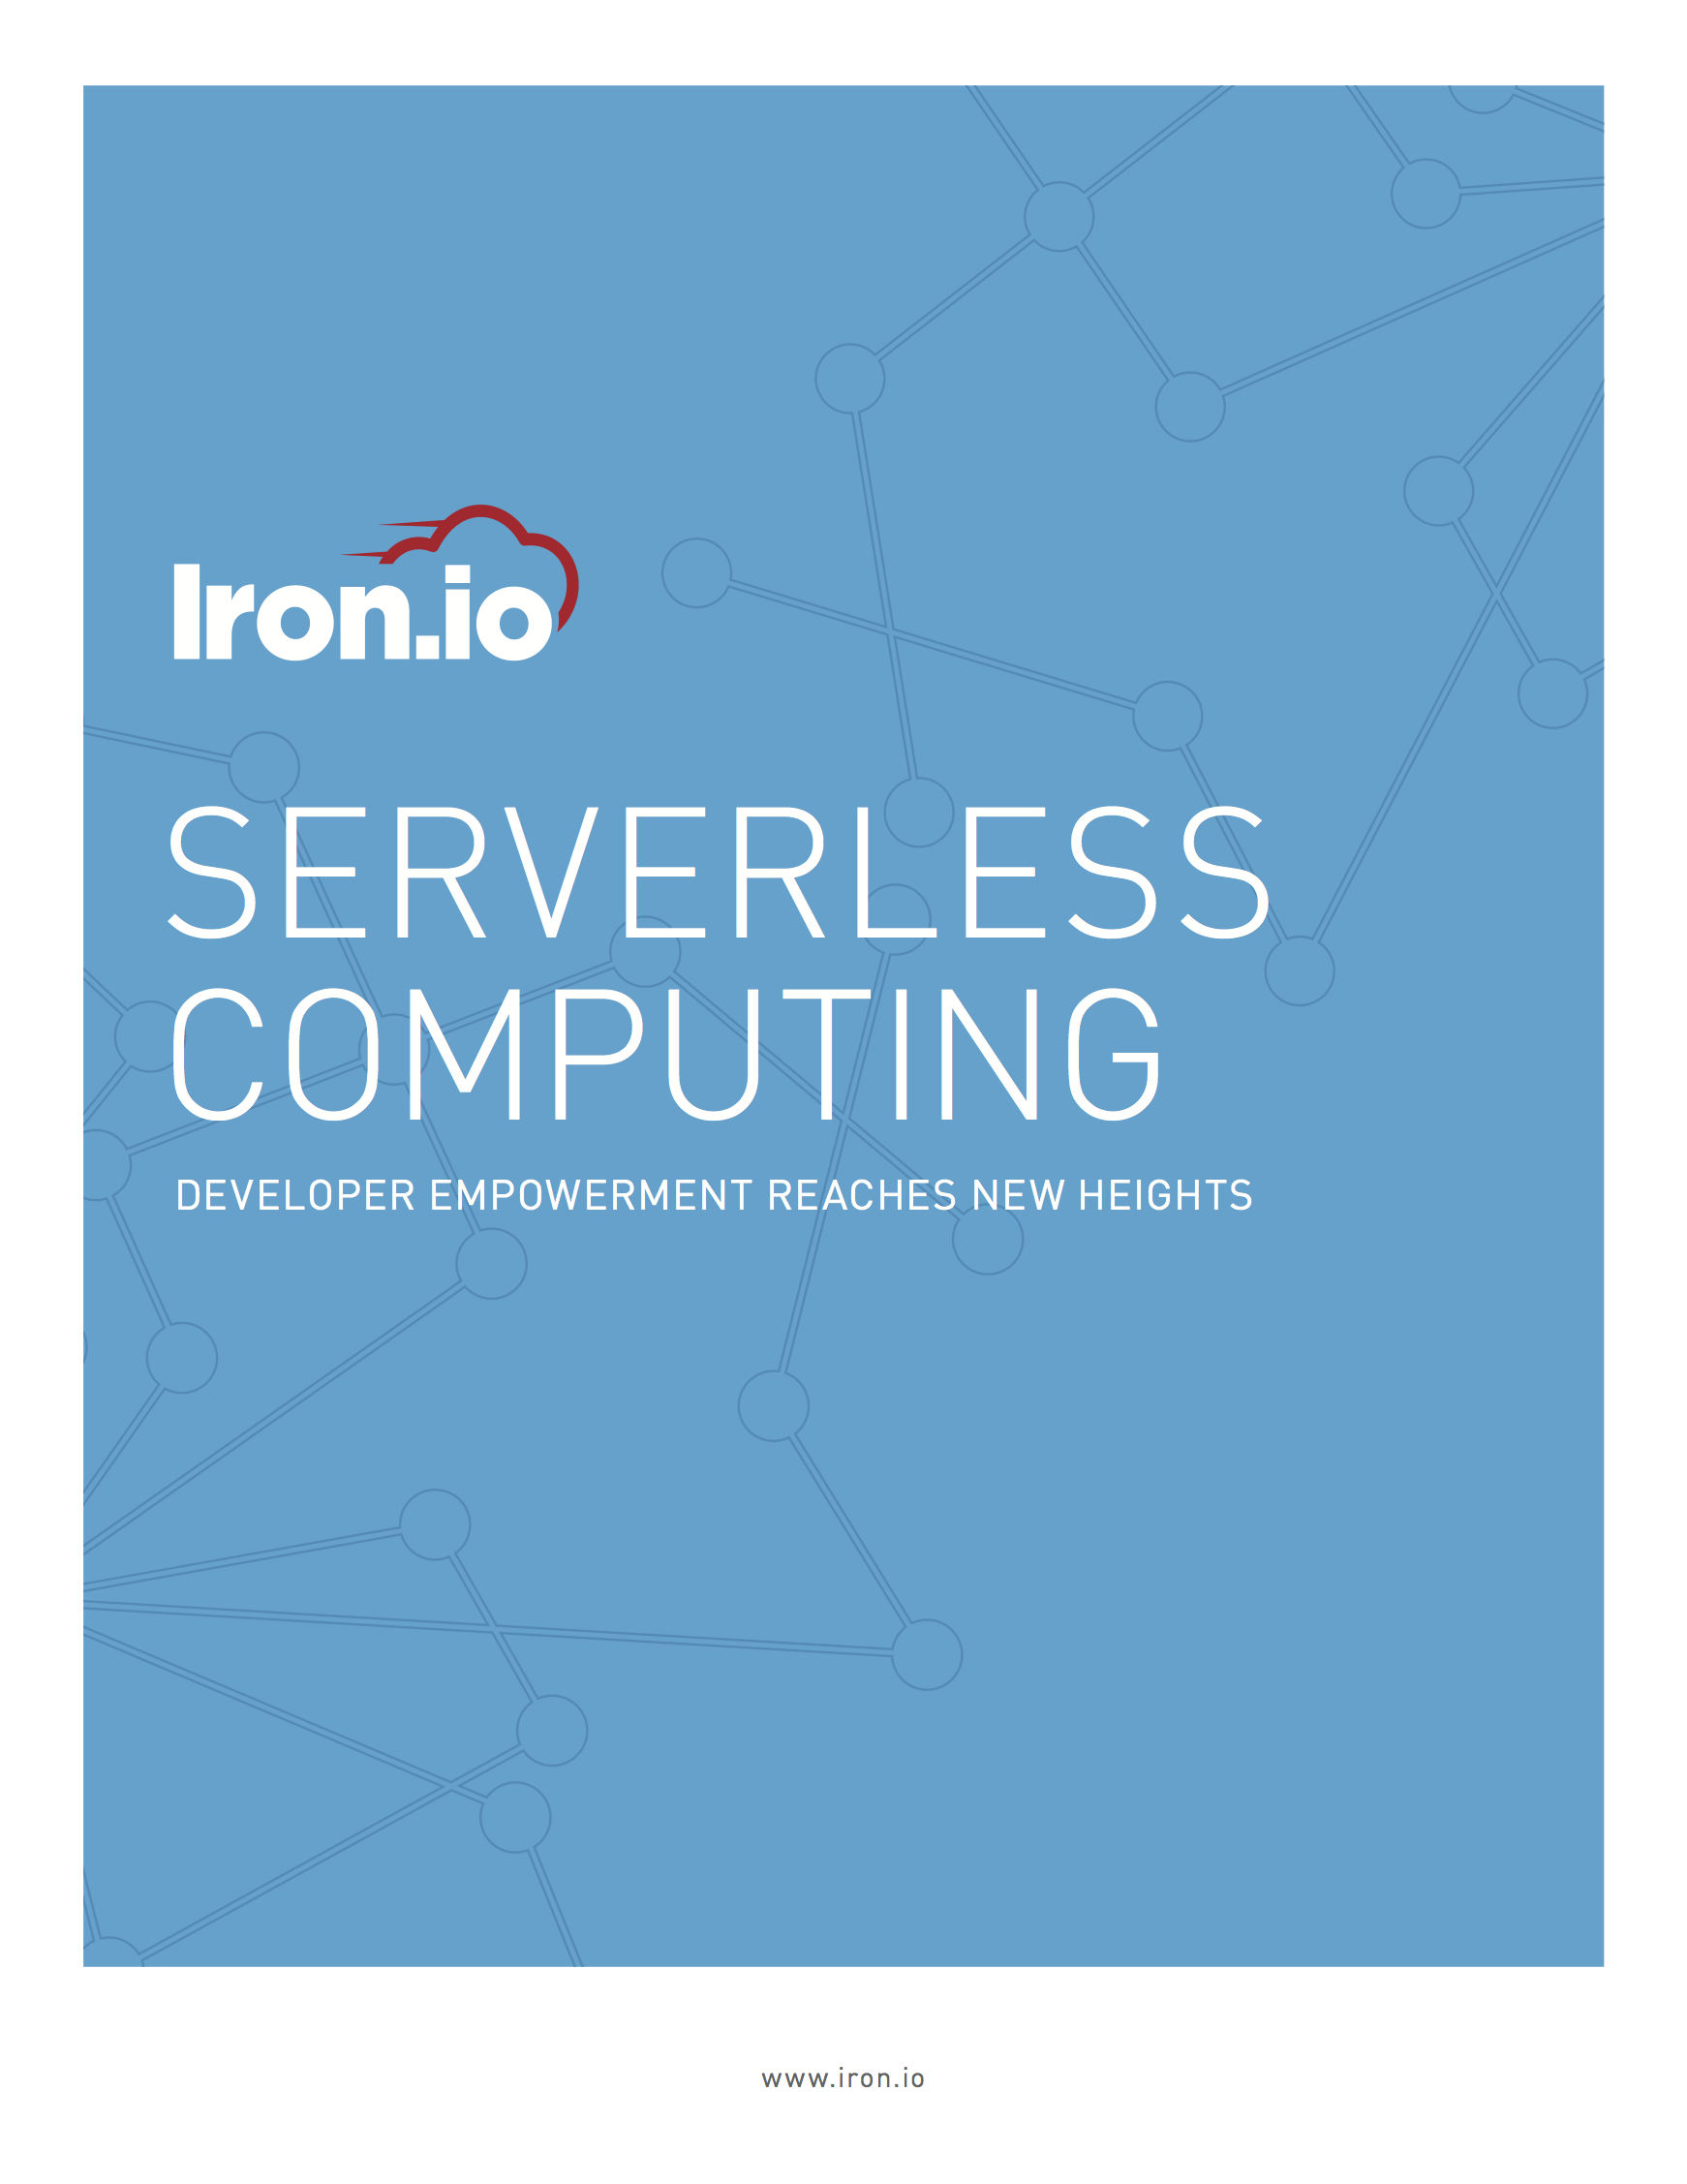 Iron.io Serverless